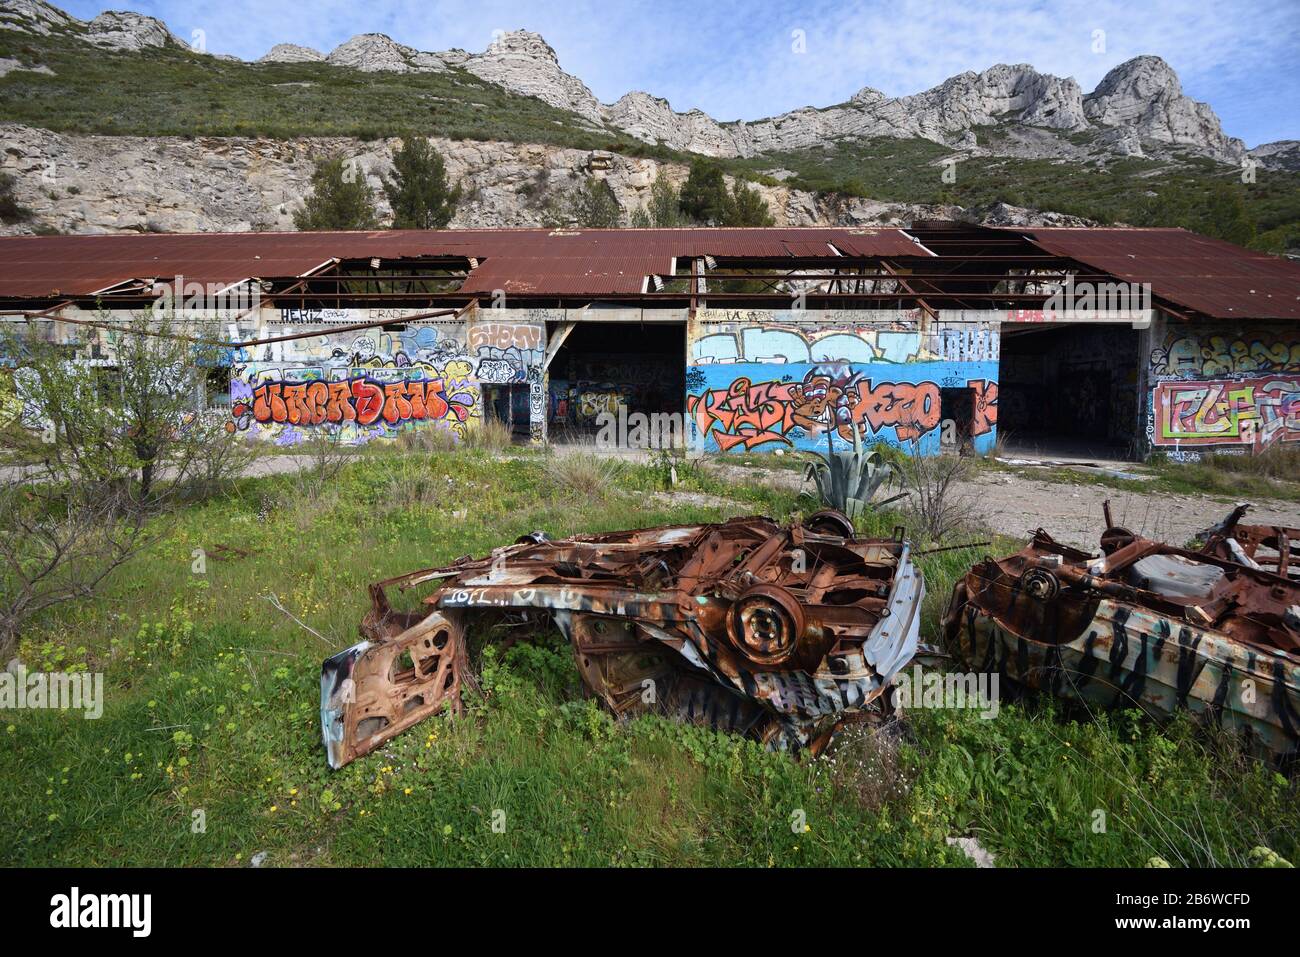 Verlassene Fabrik, Ruiniertes Industriegebäude & Rusty Wrecked Cars, ein Urbex-Standort, in Marseille Provence Frankreich Stockfoto